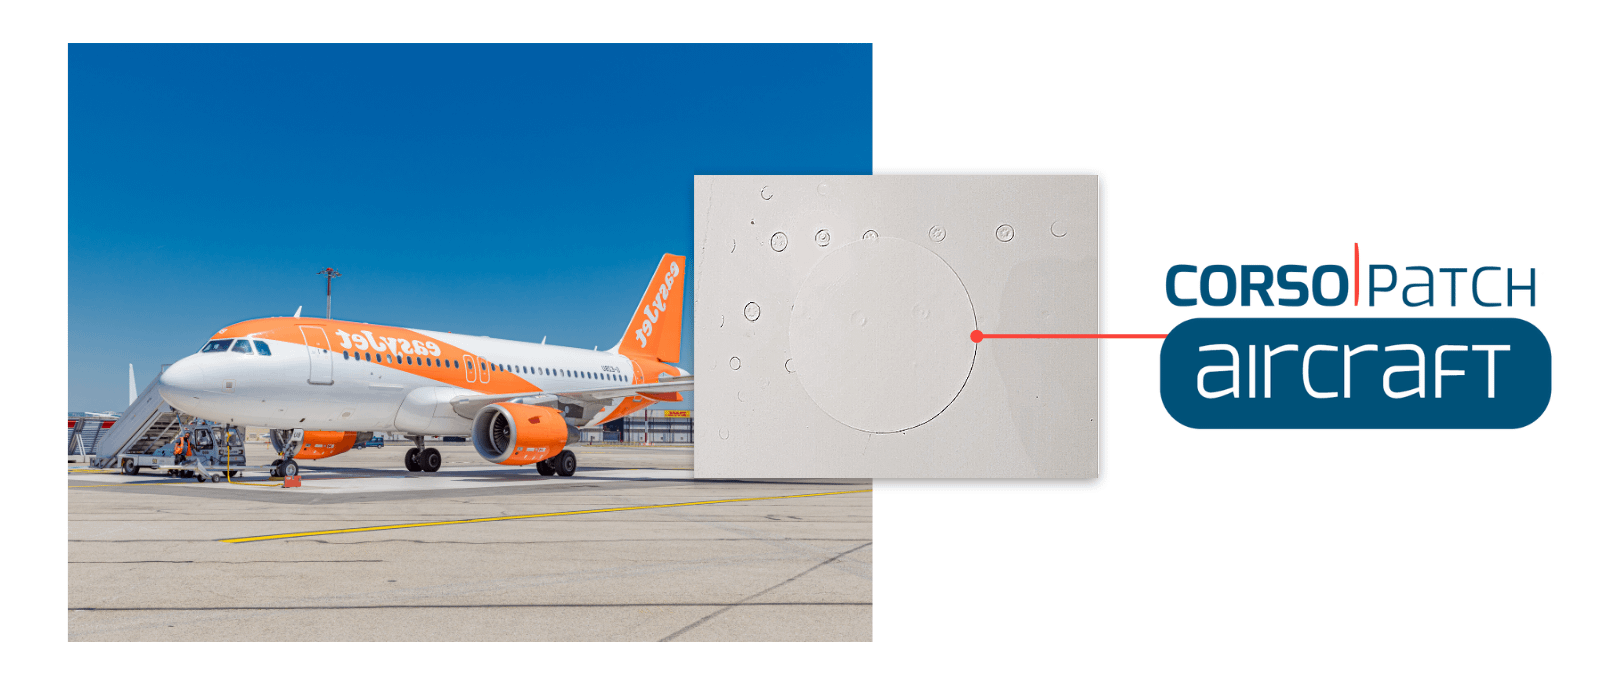 CorsoPatch Aircraft est une solution de réparation rapide de peinture pour avion pour une maintenance MRO plus rapide et simple